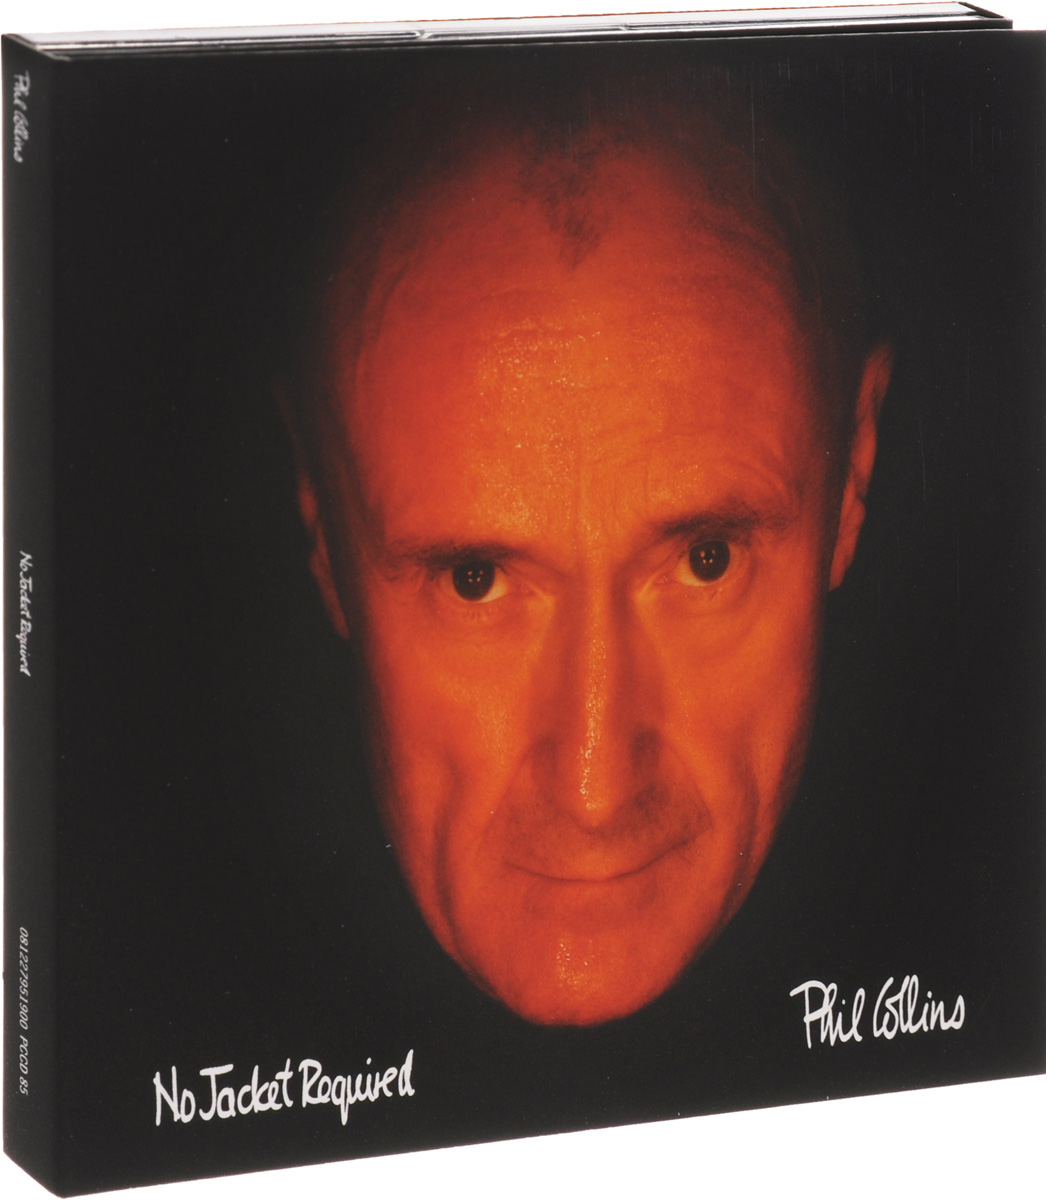 Фил коллинз альбомы. Фил Коллинз. Фил Коллинз 1985. Phil Collins no Jacket required. No Jacket required Фил Коллинз альбомы.